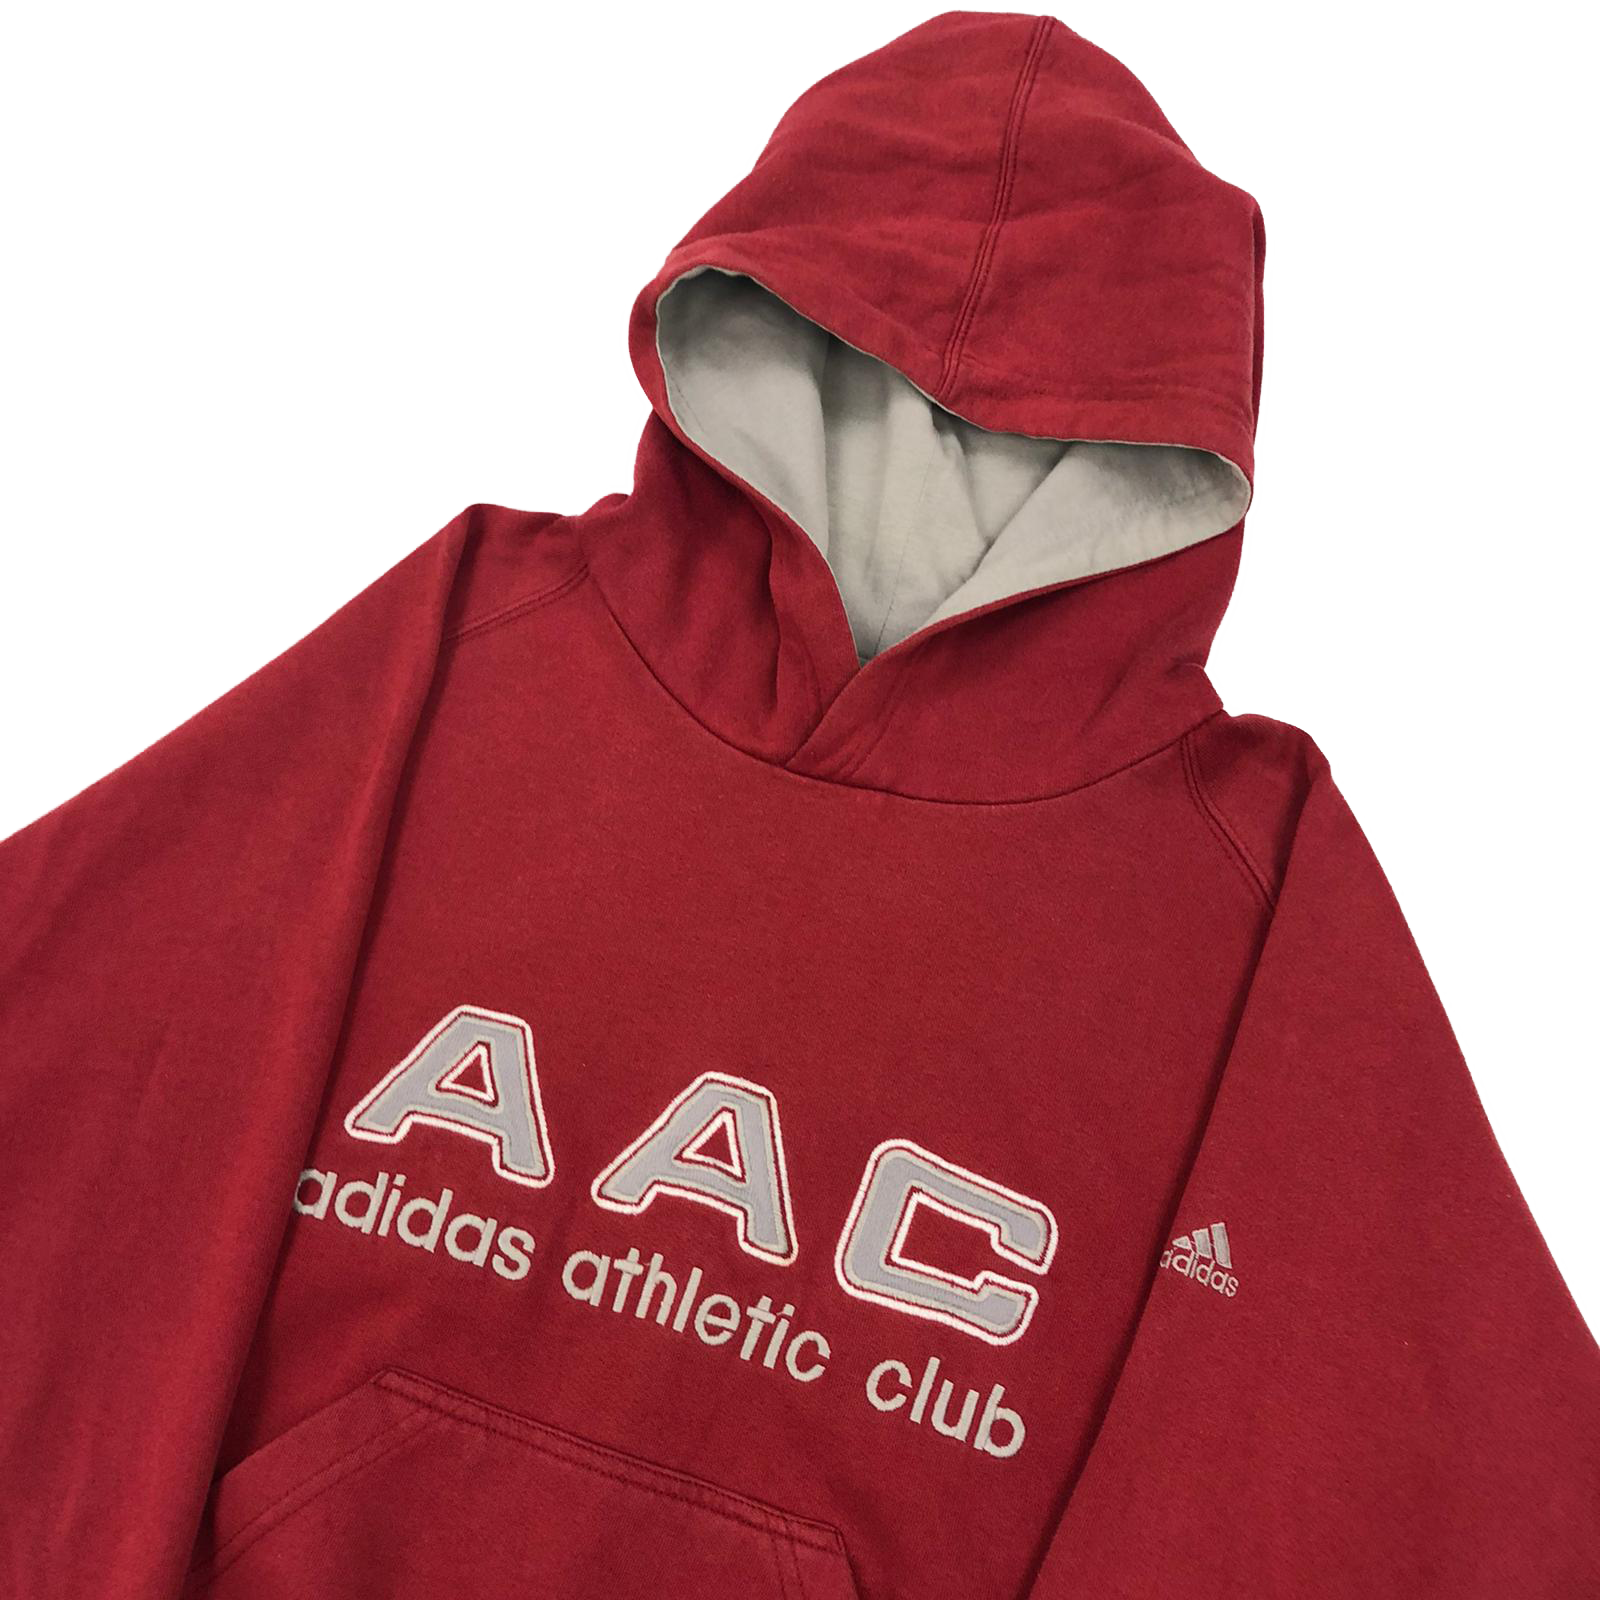 Adidas AAC hoodie